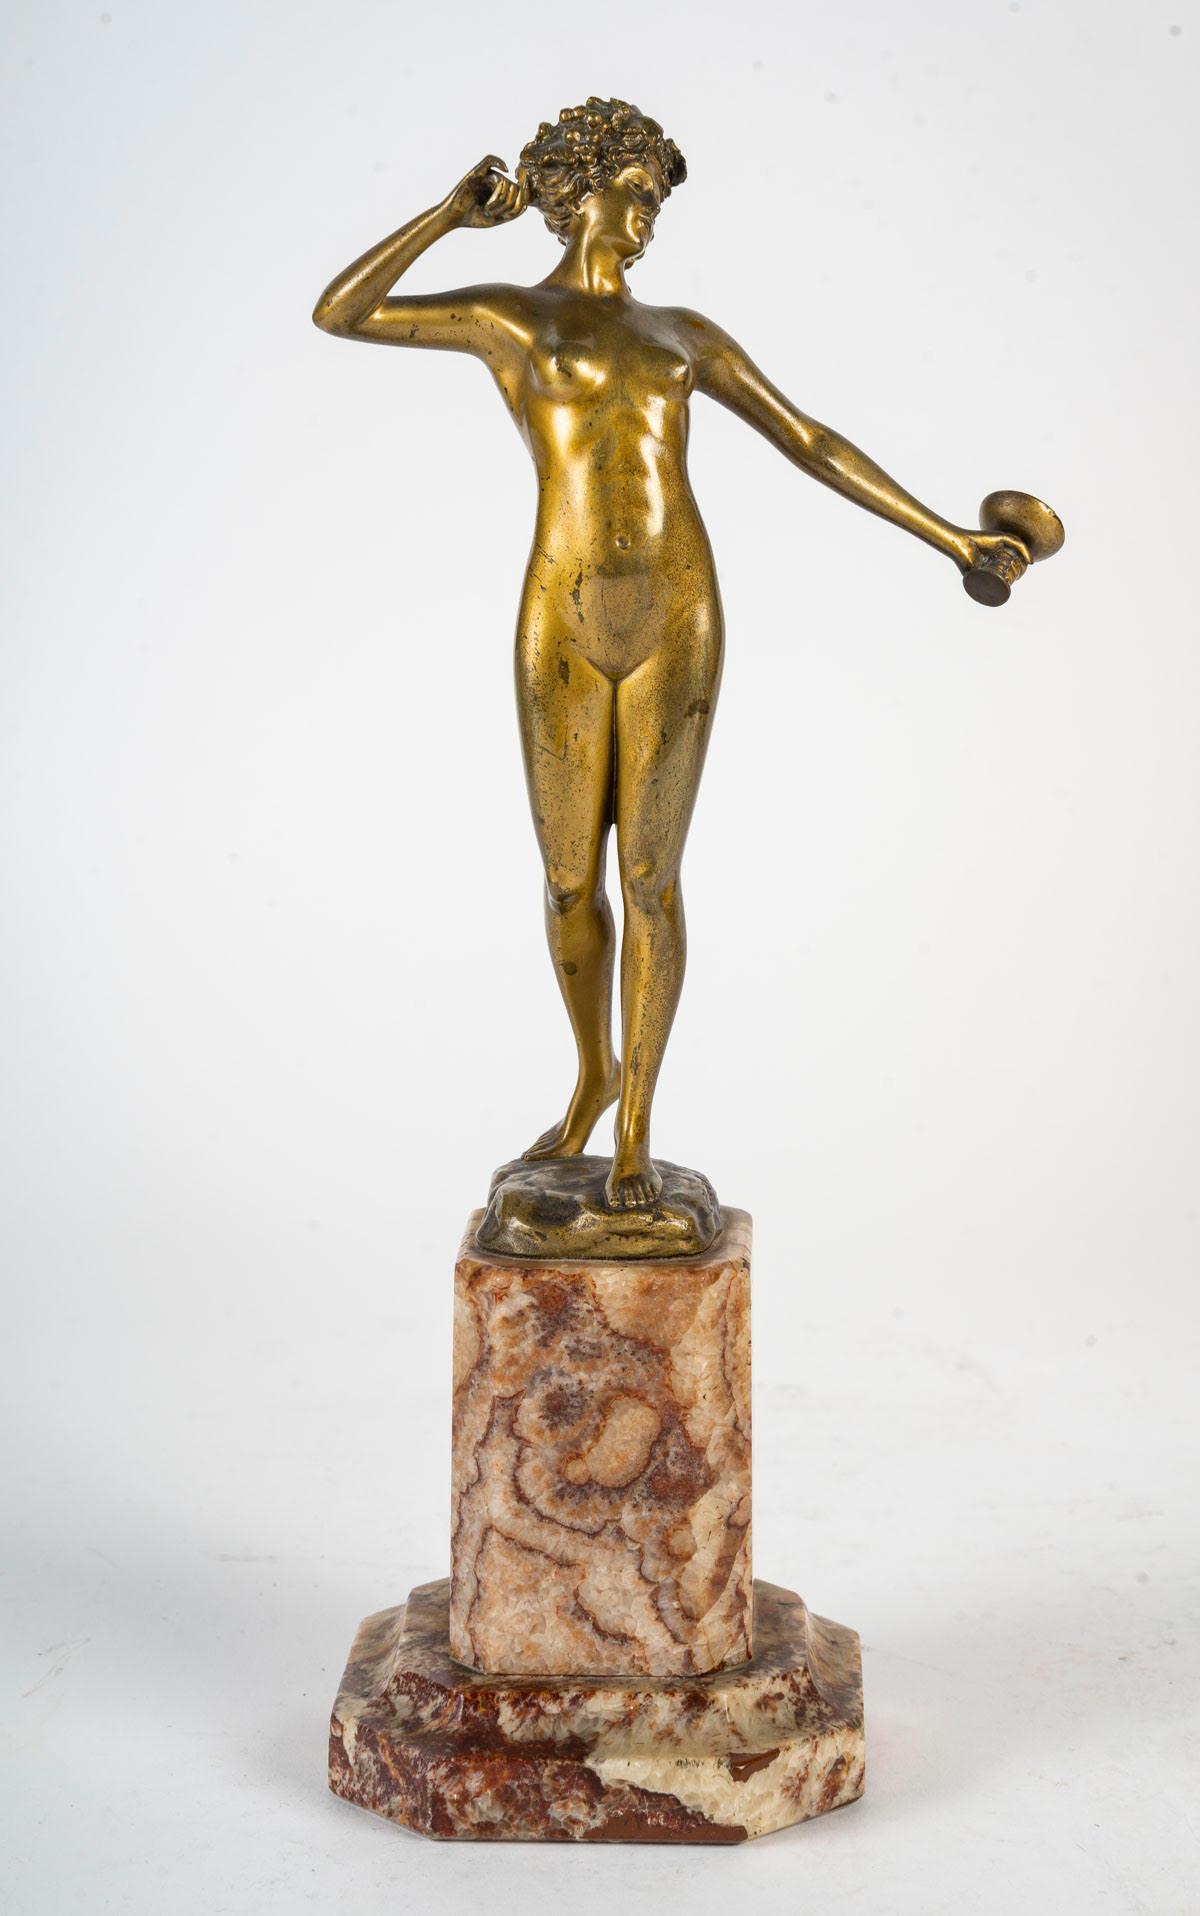 Bronze sculpture, Art Deco period, 1930, signed Brandel.

A patinated bronze sculpture on a marble base, Art Deco period, circa 1930, sculpture signed Brandel, Berlin.
H: 29, 5cm, W: 13cm, D: 9cm